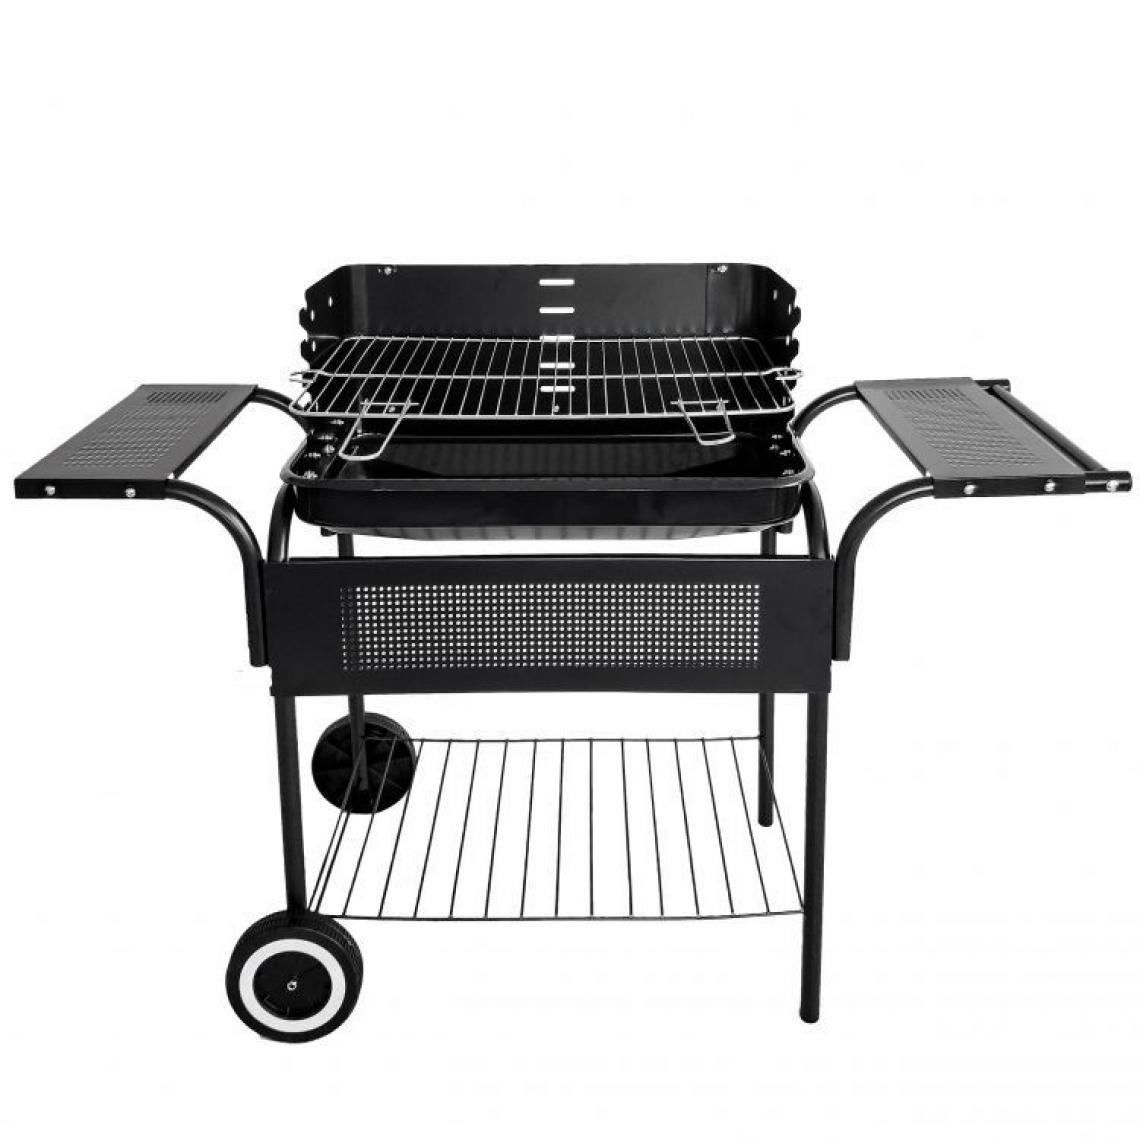 Hucoco - MSTORE - Barbecue de jardin portable - 80x113x40 - Grille chromée - Tablette inférieure - Noir - Barbecues charbon de bois